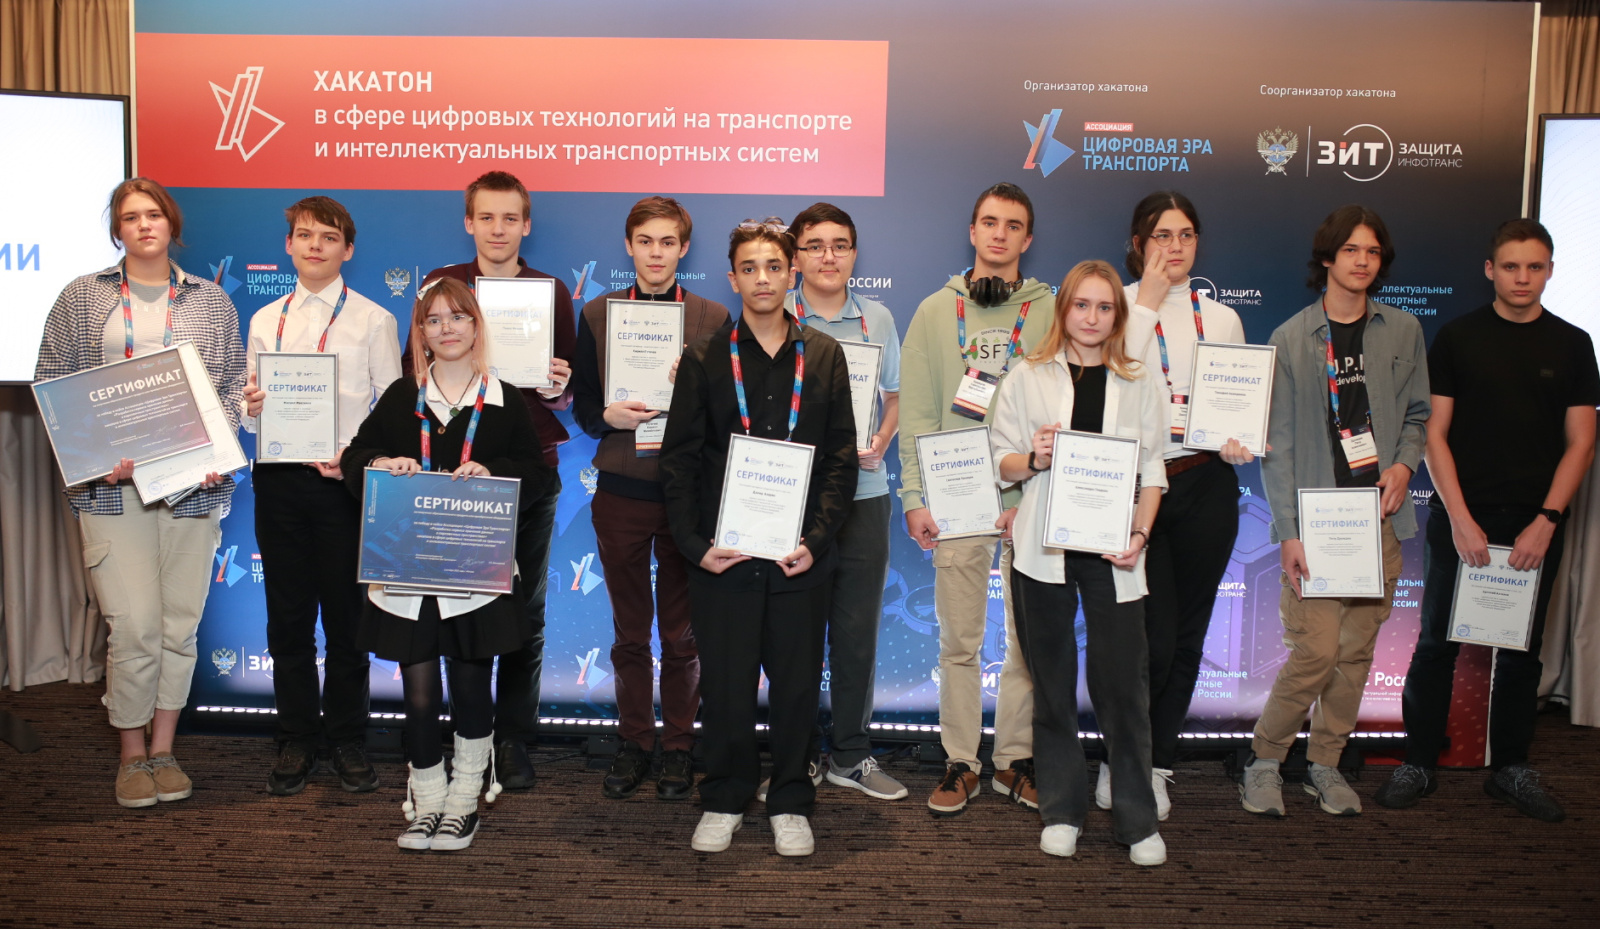 В Москве состоялось ИТ-соревнование в области цифровых технологий транспорта и интеллектуальных транспортных систем